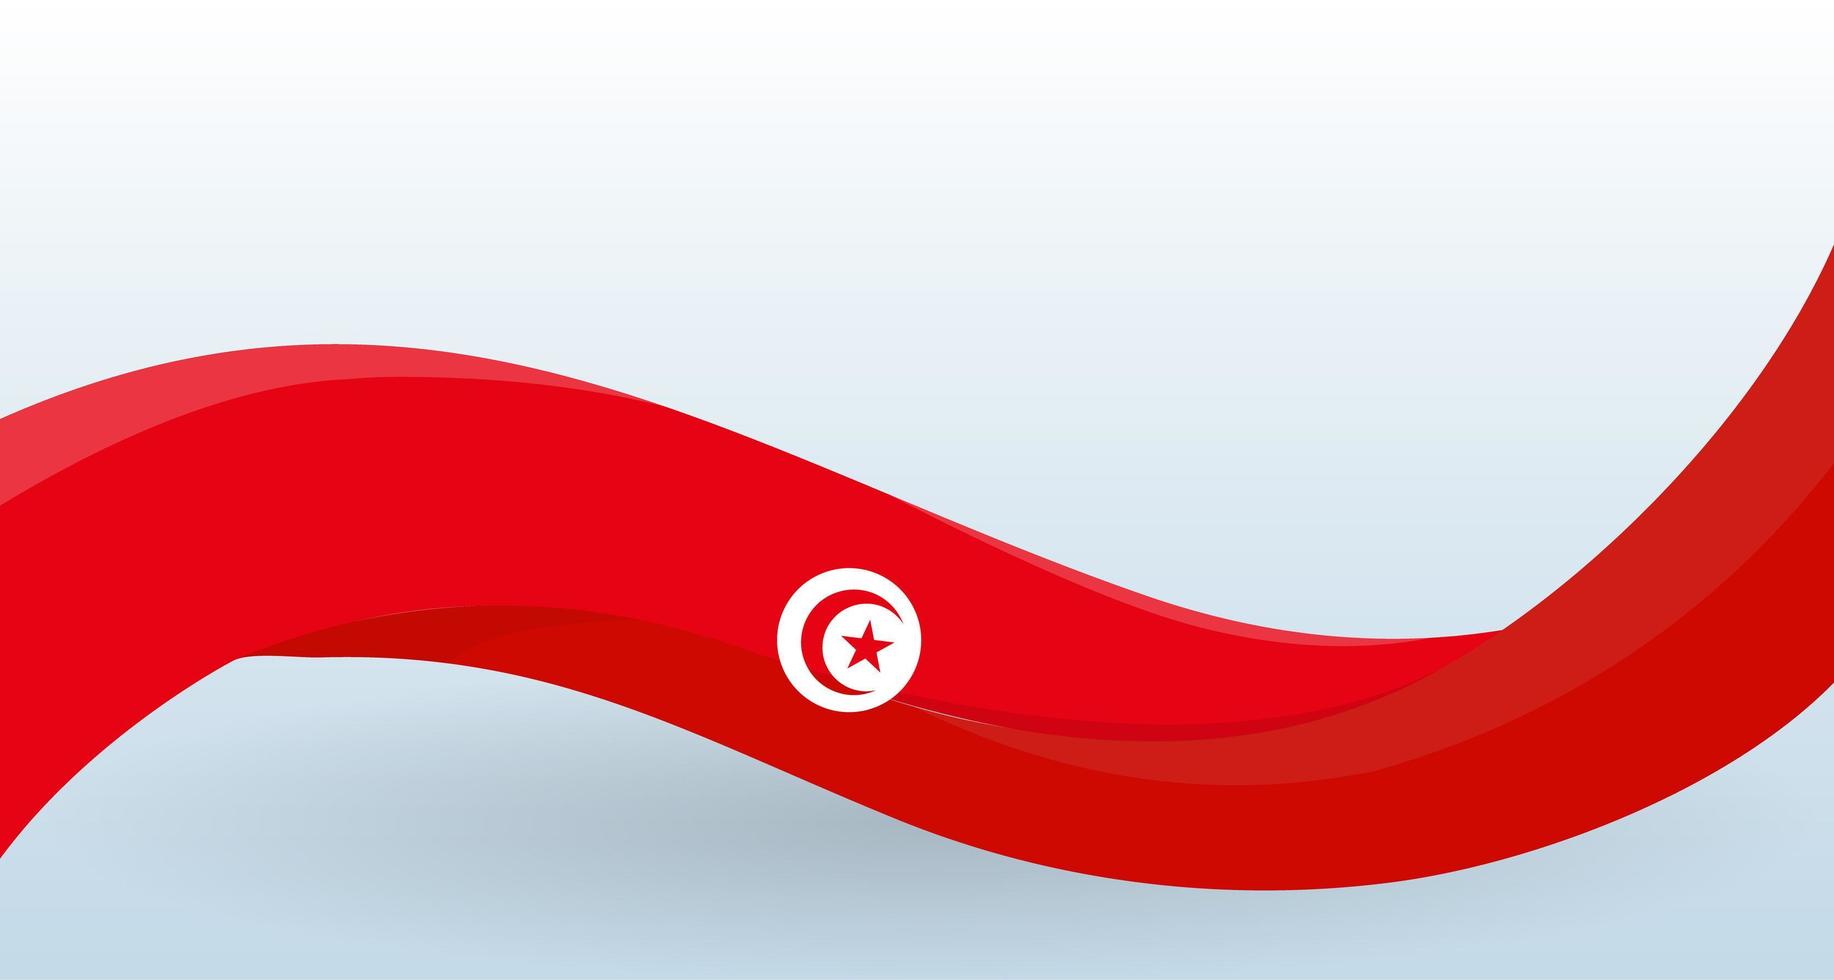 bandeira nacional do tunis. acenando o símbolo nacional da Tunísia, forma incomum. modelo de design para decoração de panfleto e cartão, cartaz, banner e logotipo. ilustração isolada do vetor. vetor